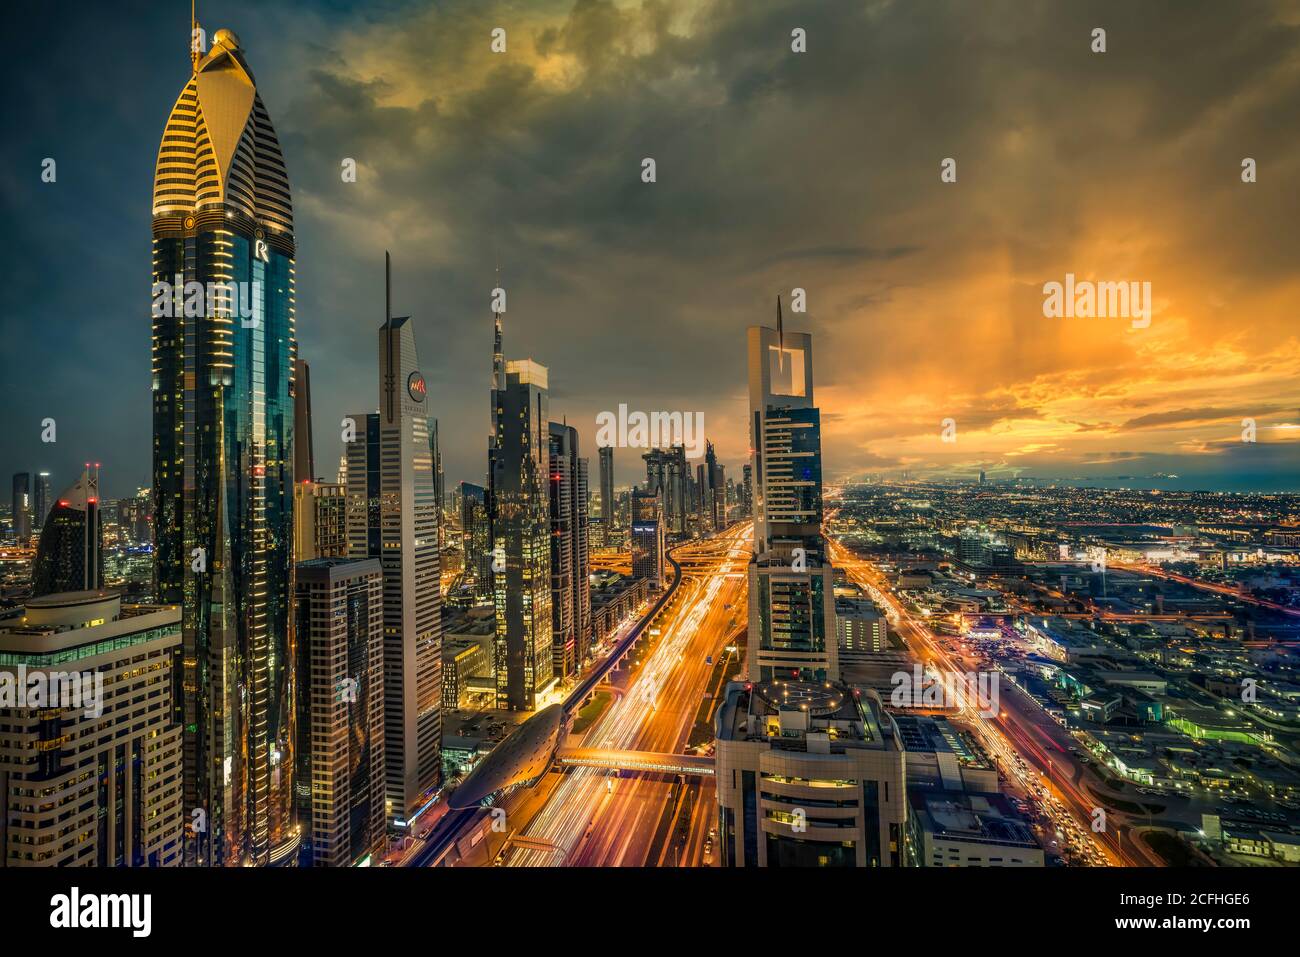 Una vista de la ciudad al atardecer desde el distrito financiero del centro de la ciudad de Dubai, Emiratos Árabes Unidos, Oriente Medio. Foto de stock